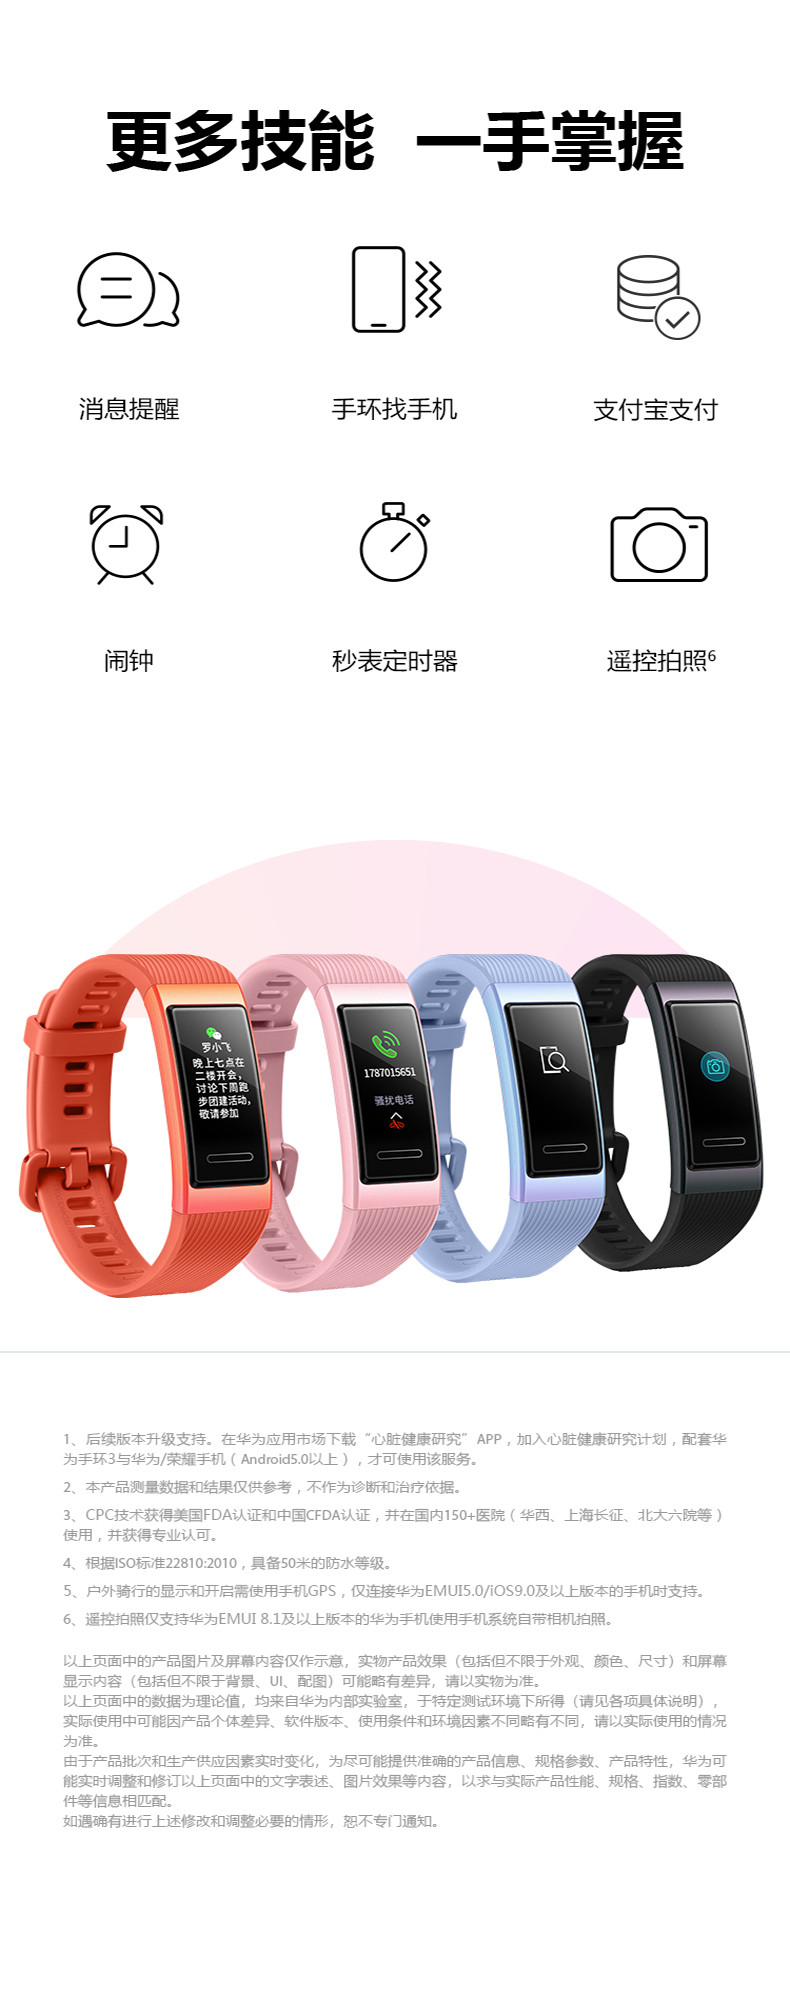 Huawei/华为手环3运动智能手表防水彩屏睡眠心率监测支付天气微信移动手环